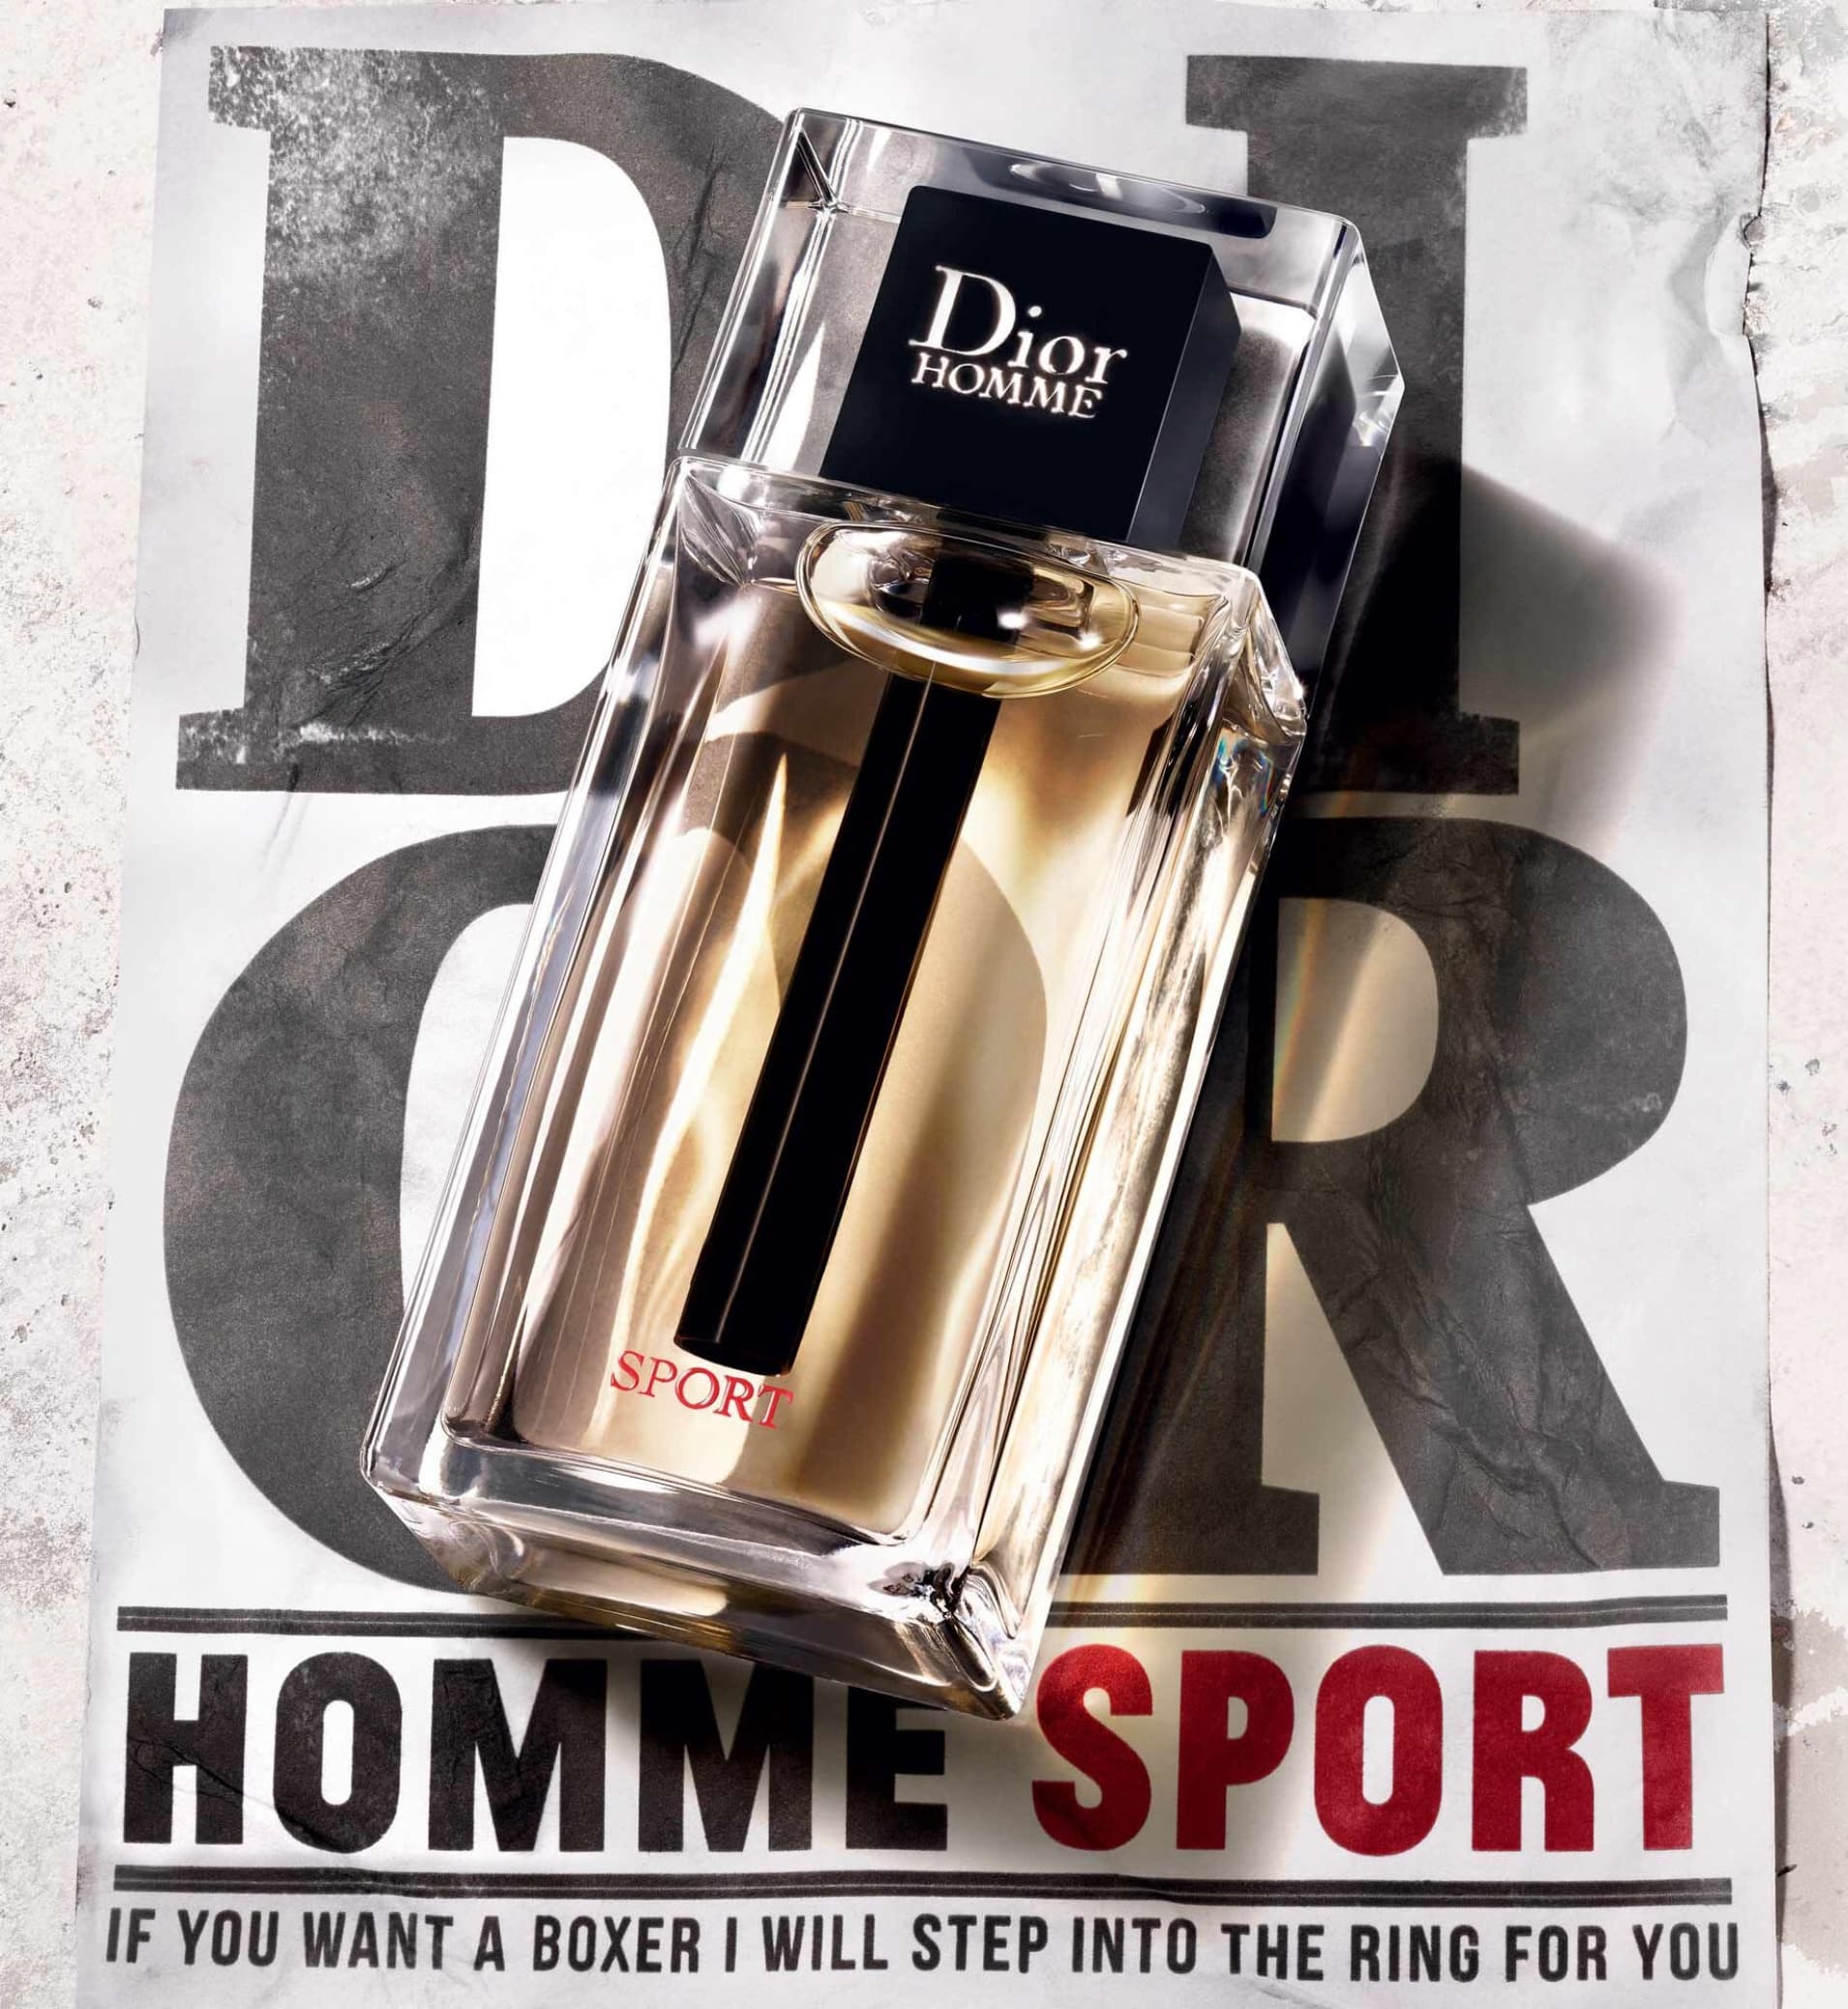 Dior Homme Sport así es la nueva versión del perfume para hombres